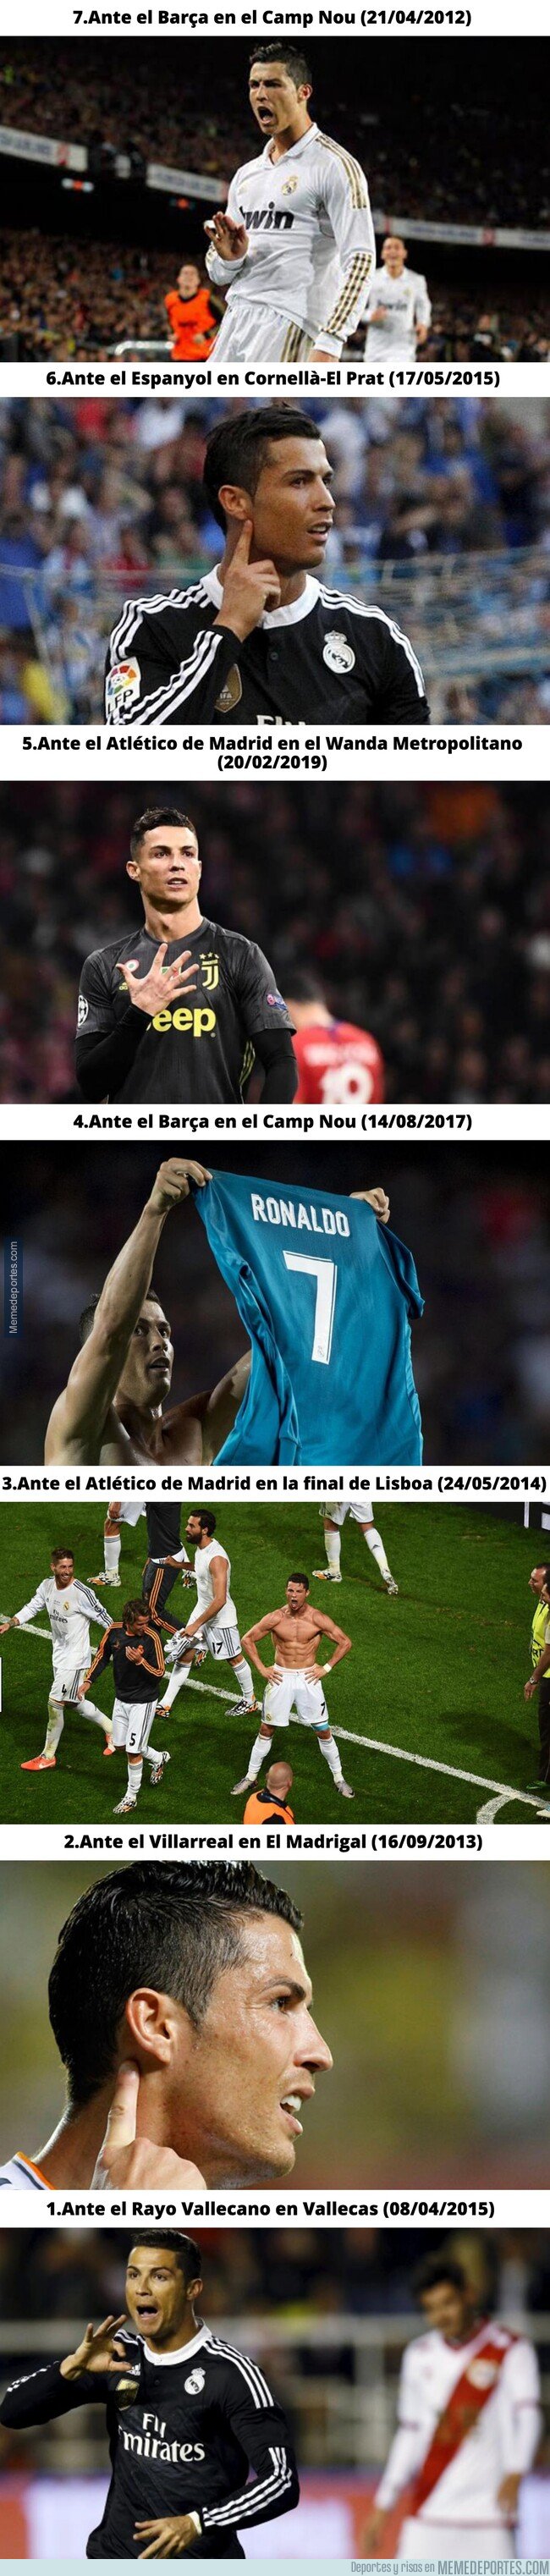 1065225 - Todos los gestos de desprecio y prepotencia de Cristiano Ronaldo en su carrera